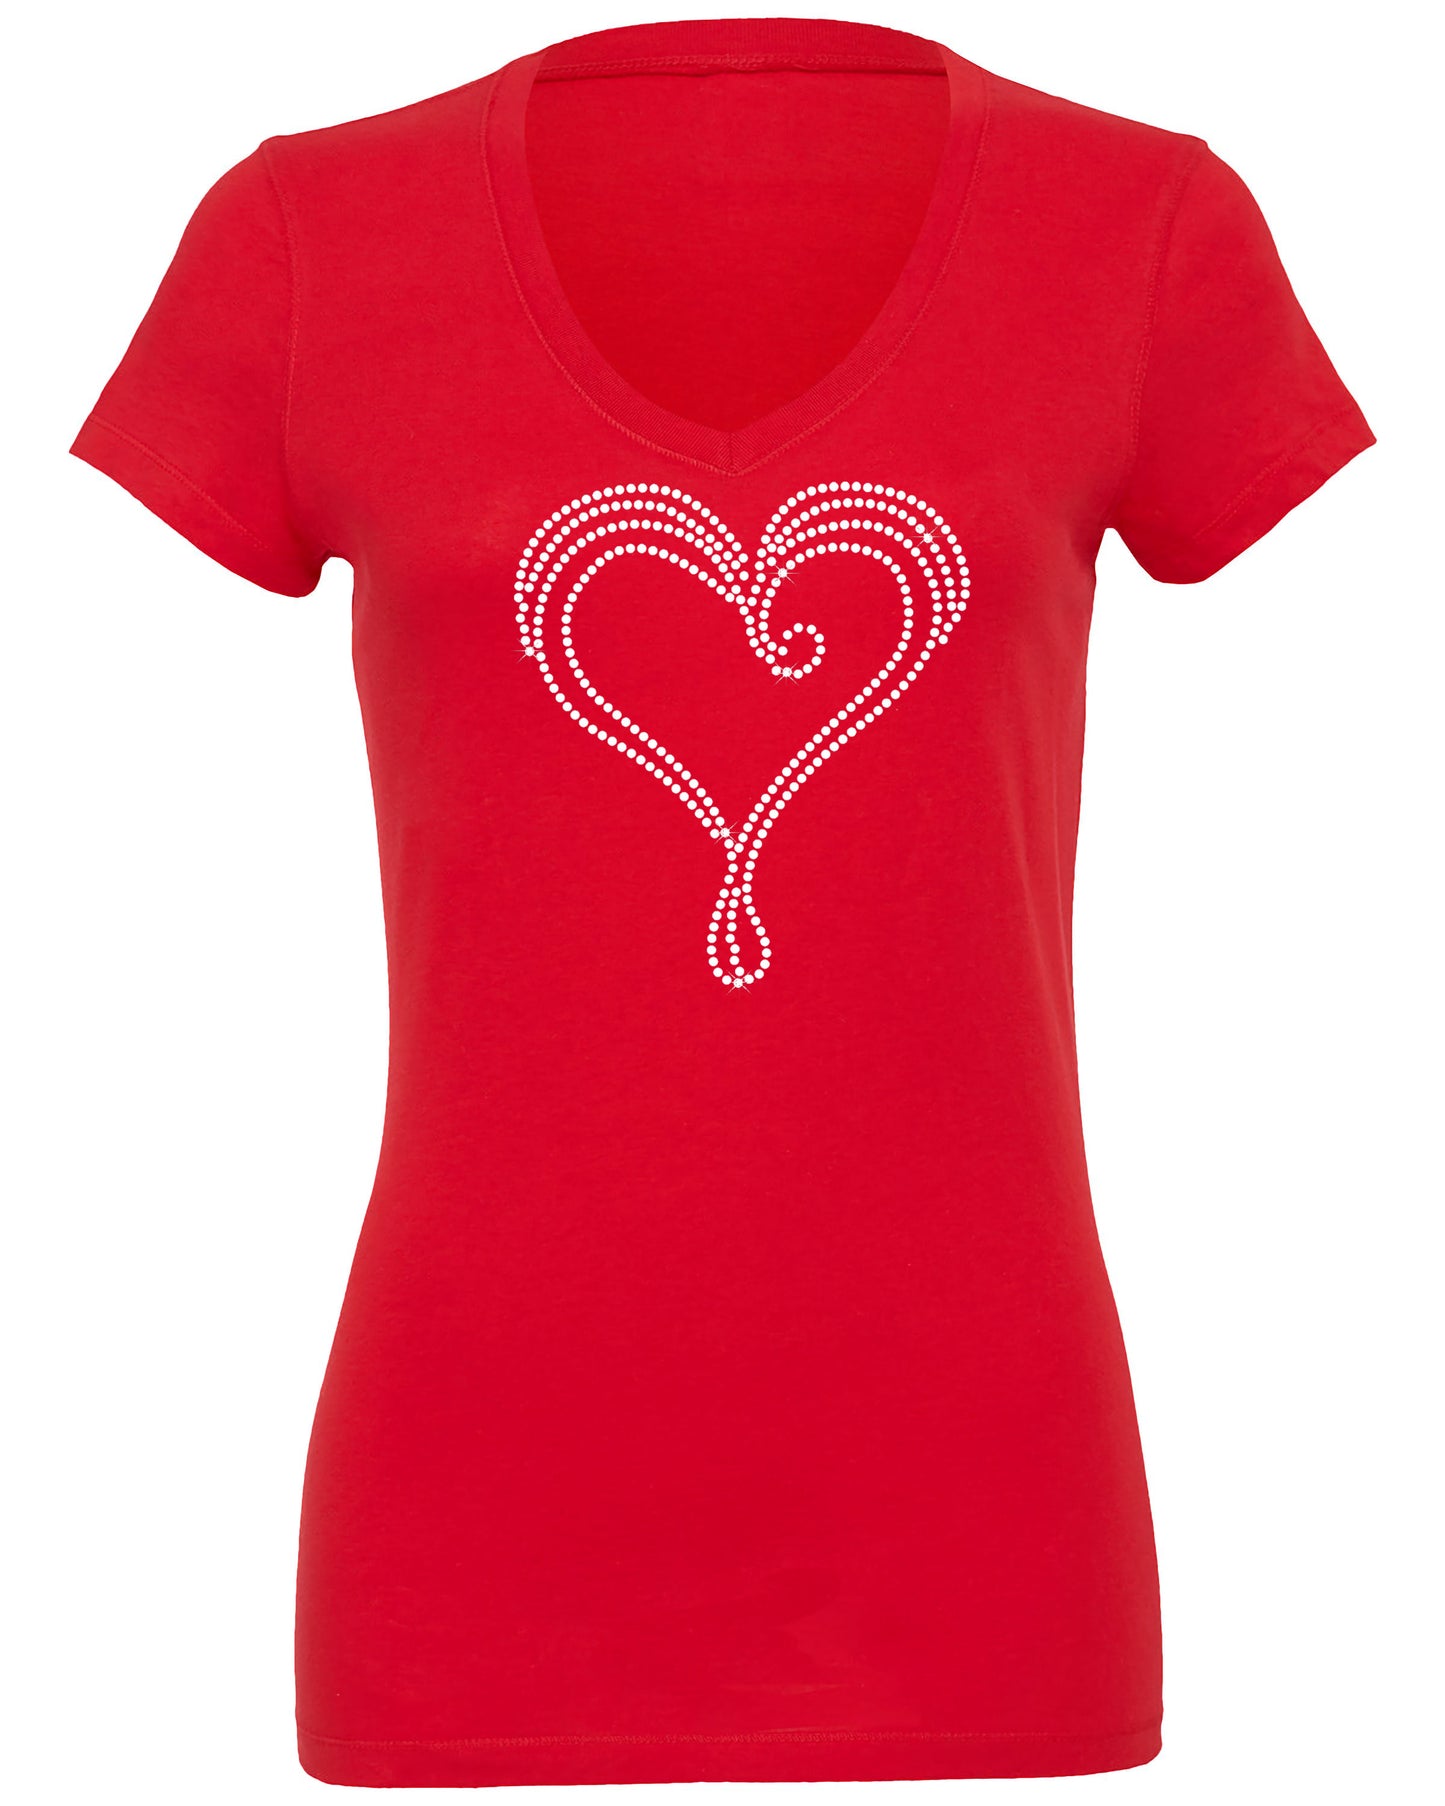 Red Rhinestone Liquid Heart T Shirt